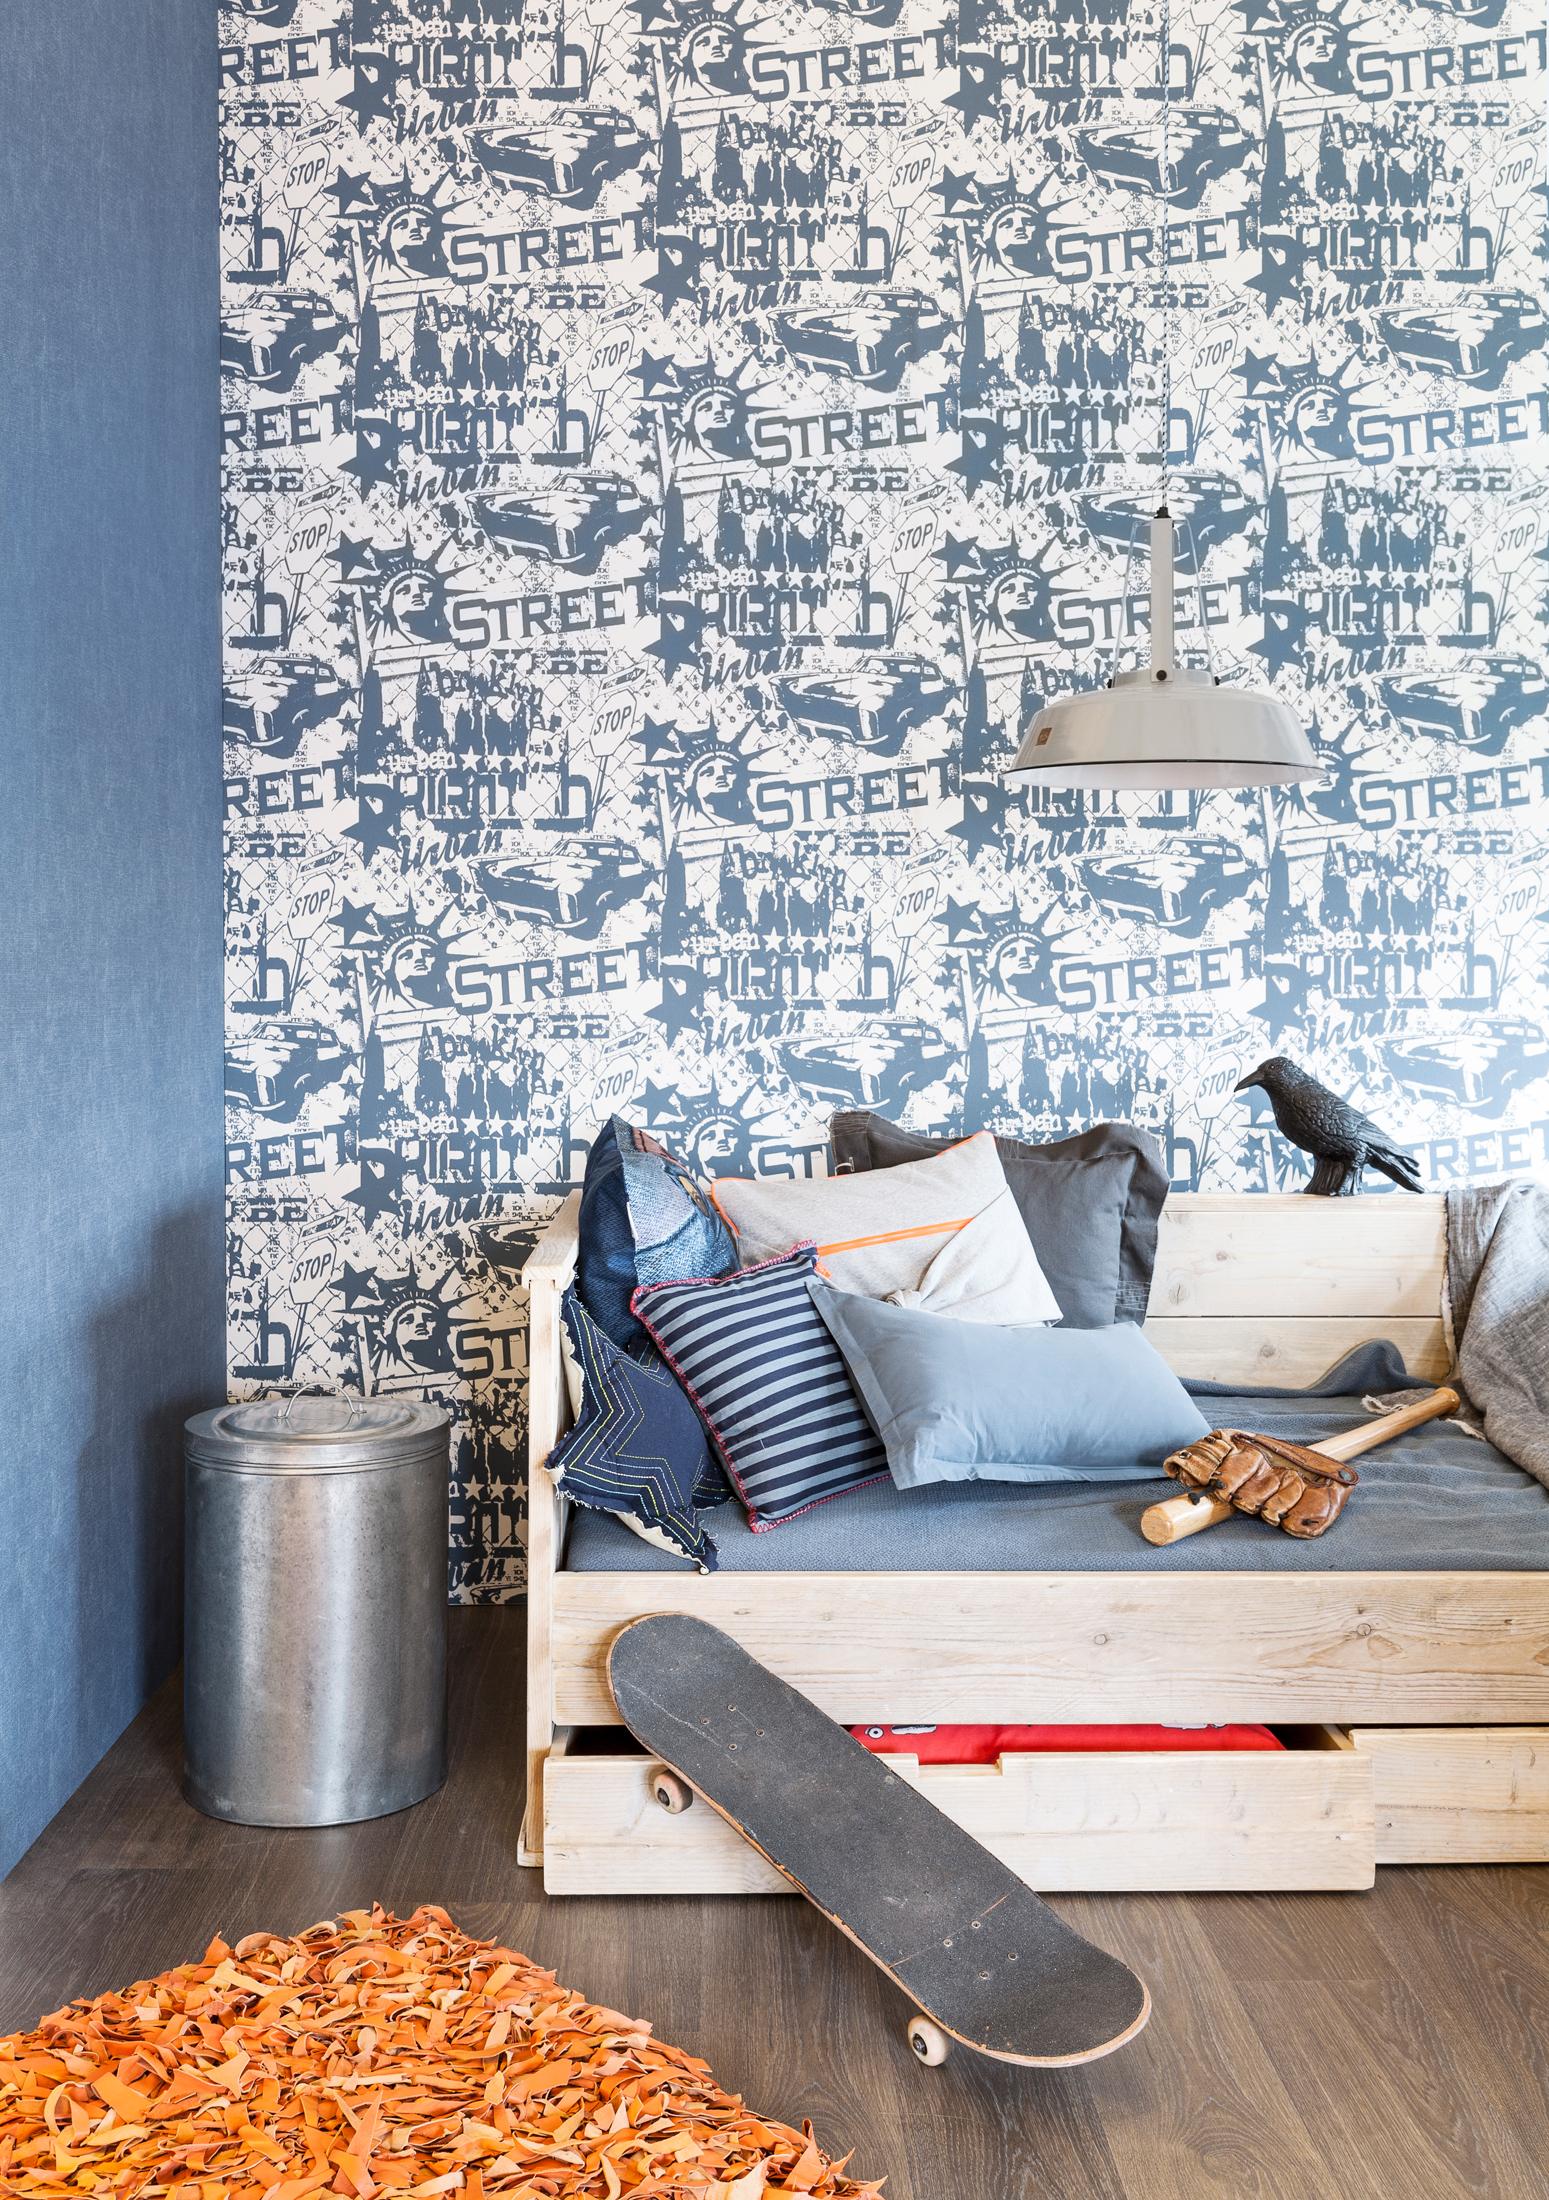 Tapete für Jugendzimmer #wandgestaltung #jugendzimmer #wäschekorb #blauewandgestaltung #designwand ©BN Wallcoverings